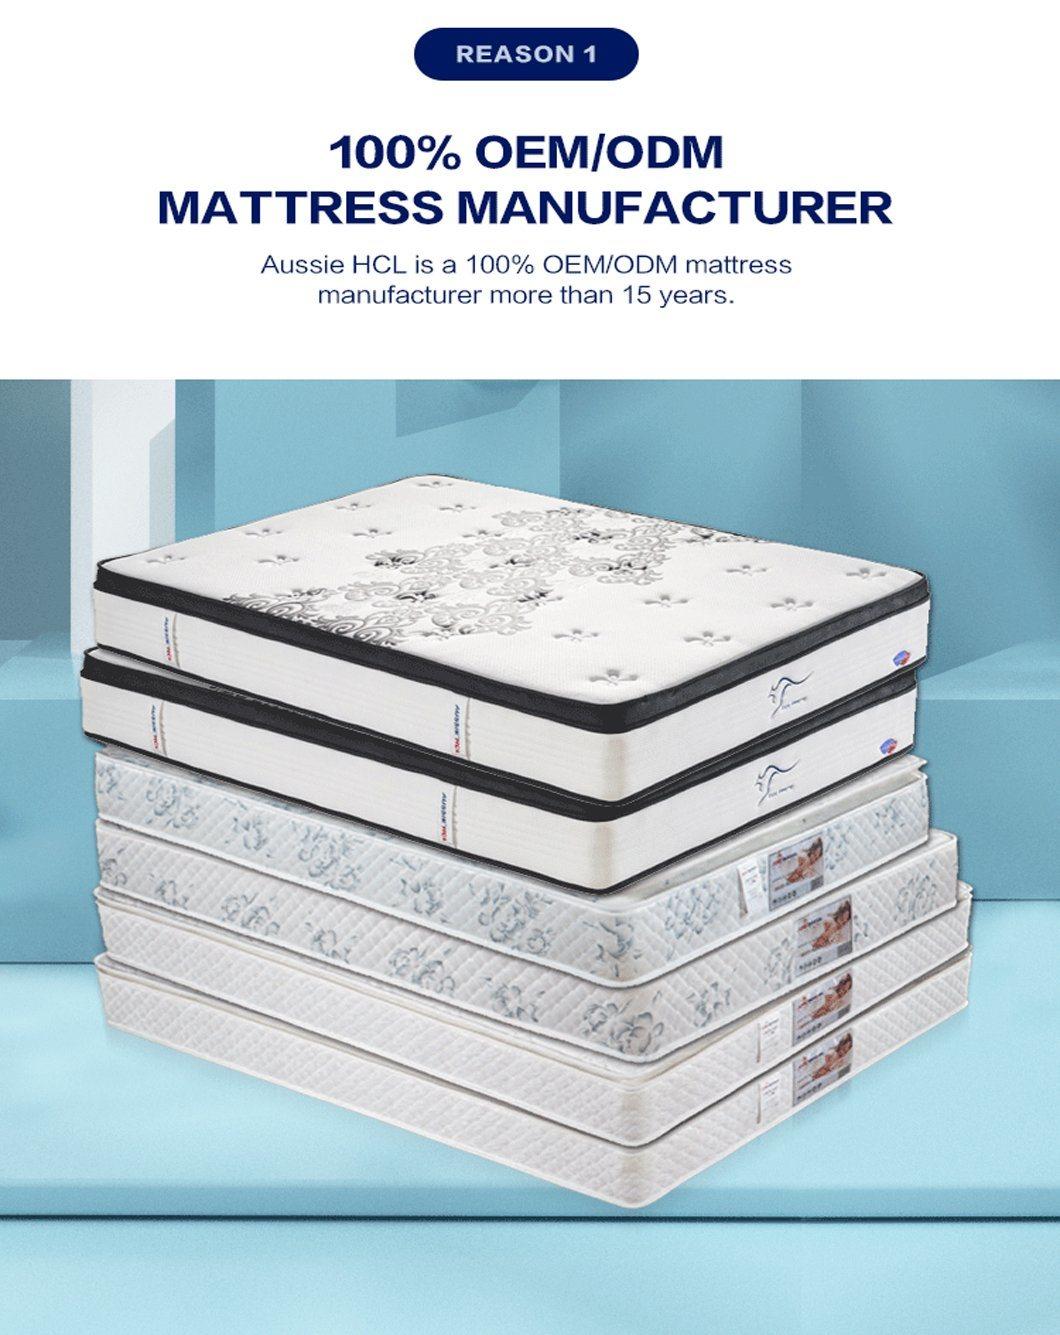 The Best Factory Aussie Sleep Well Full Inch Korean Mattresses King Double Modern Gel Memory Foam Mattress